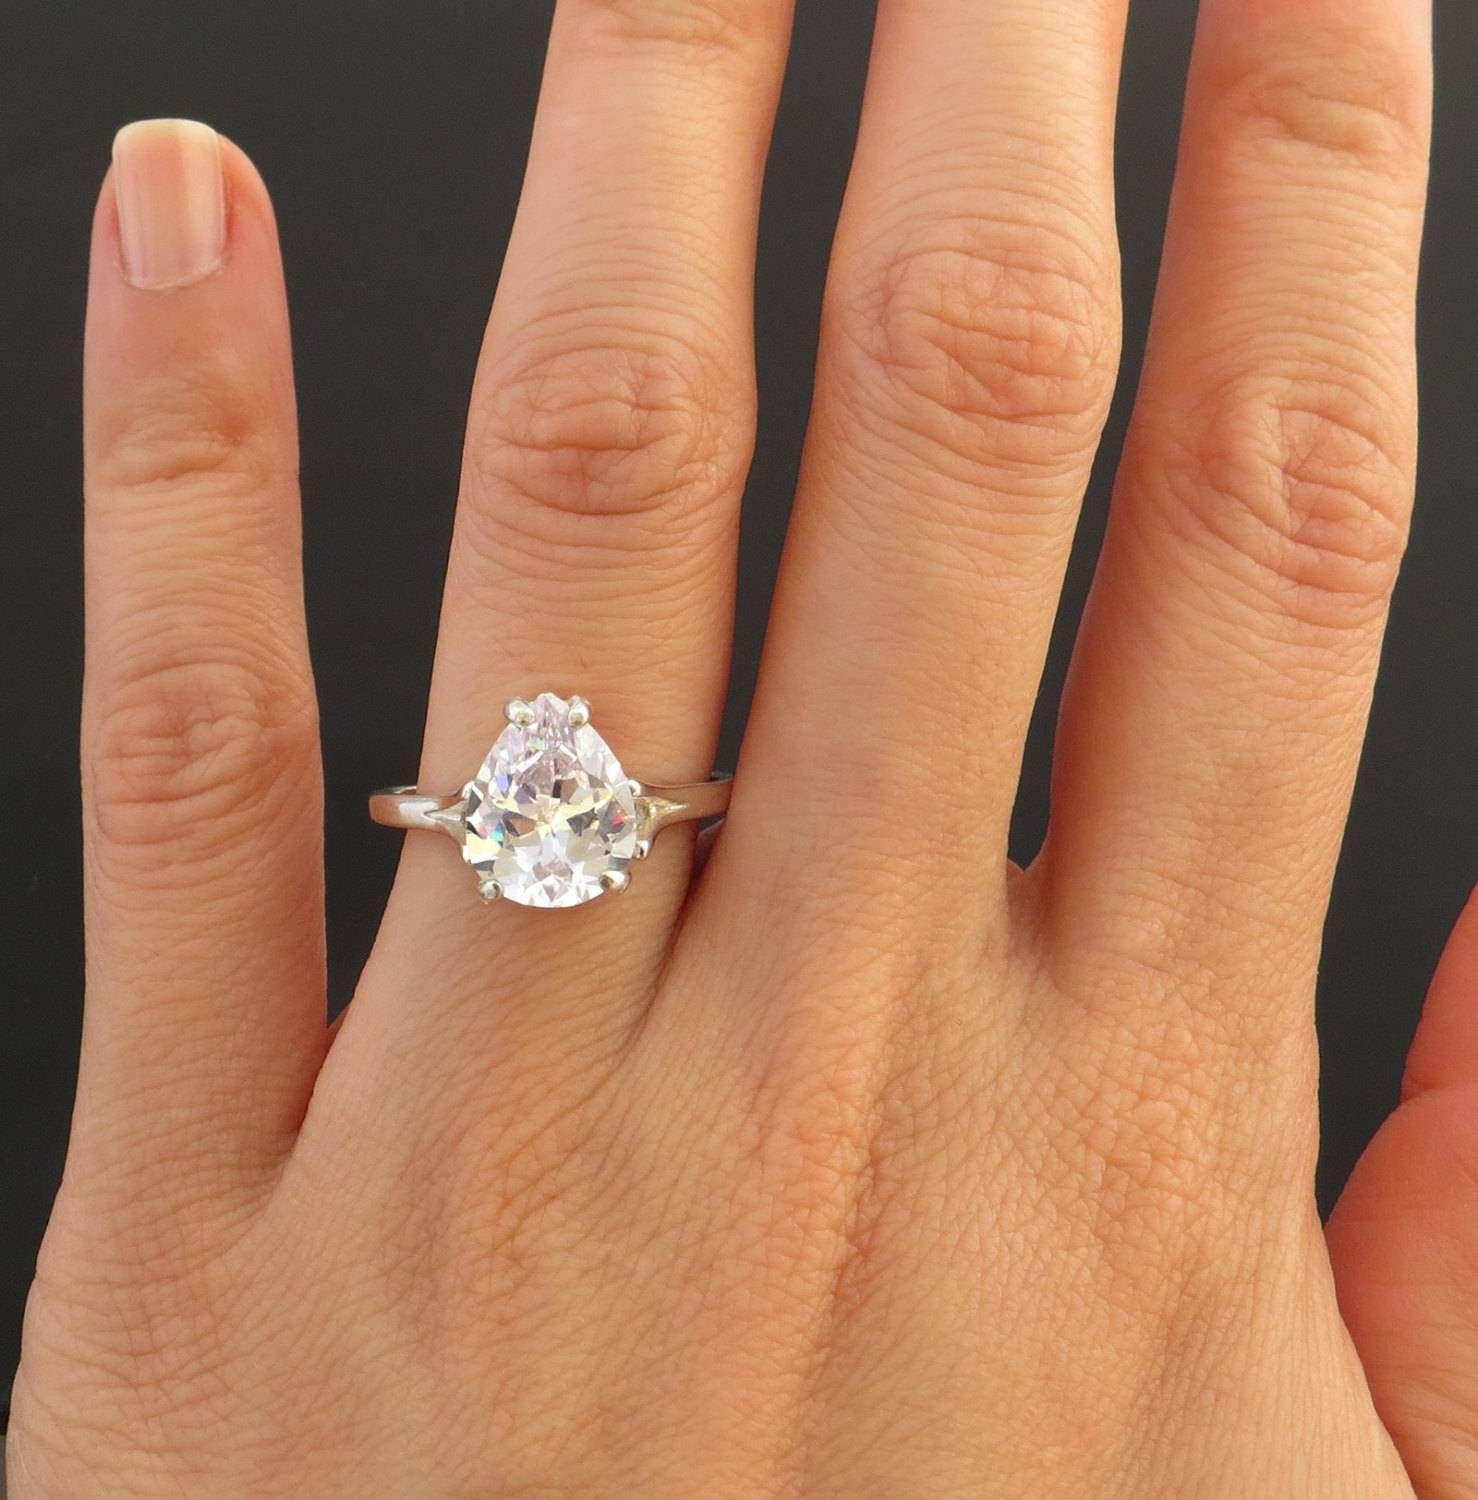 2 Carat Princess Cut Diamond Engagement Ring 2019 Popular 2 5 Ct Princess C...